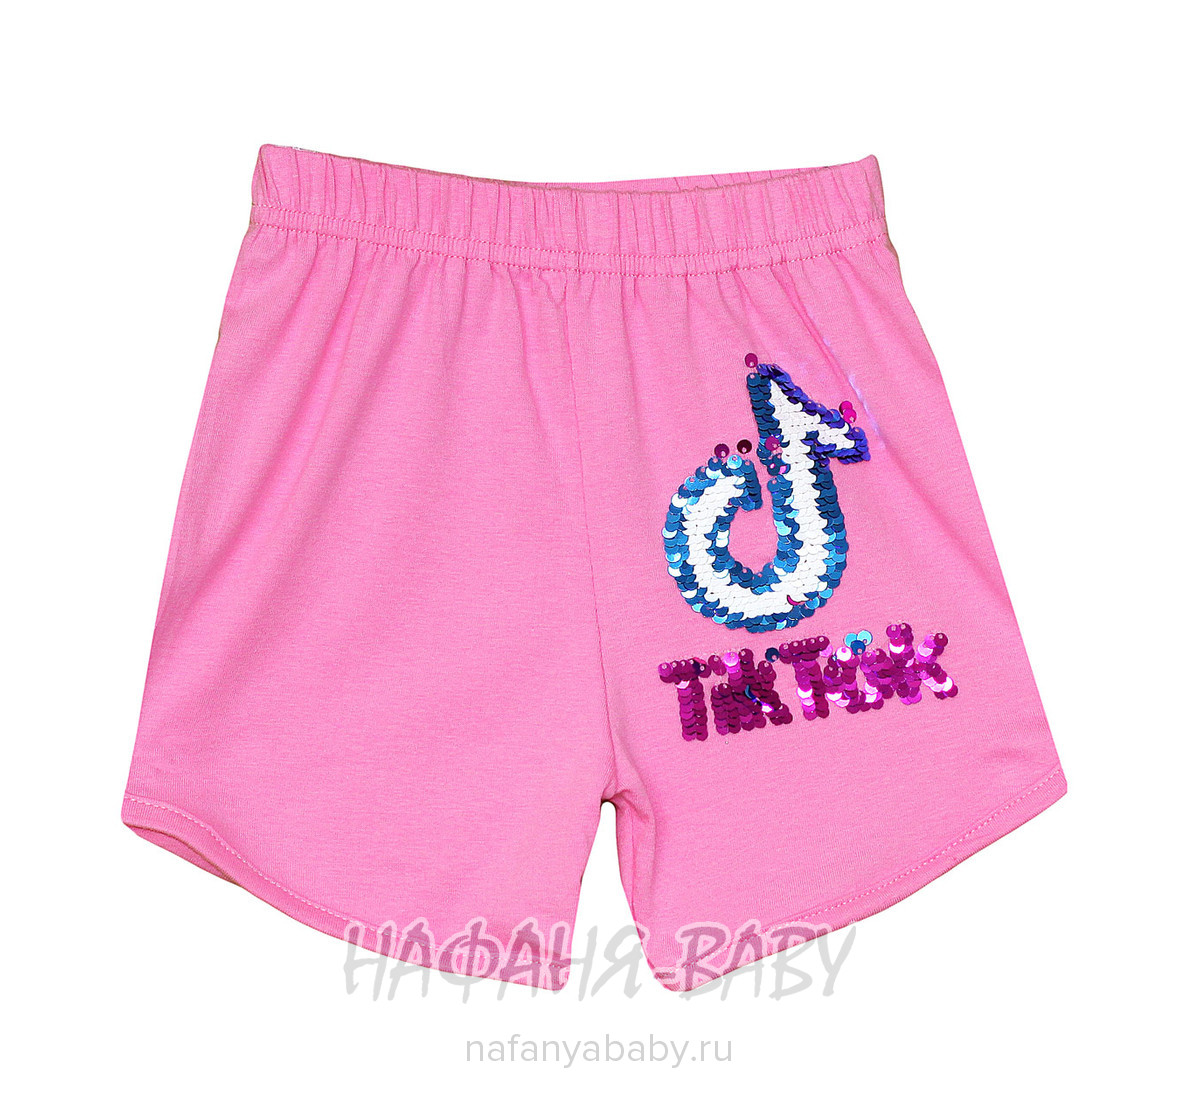 Детские шорты для девочки BASAK арт: 3576, 5-9 лет, цвет розовый, оптом Турция